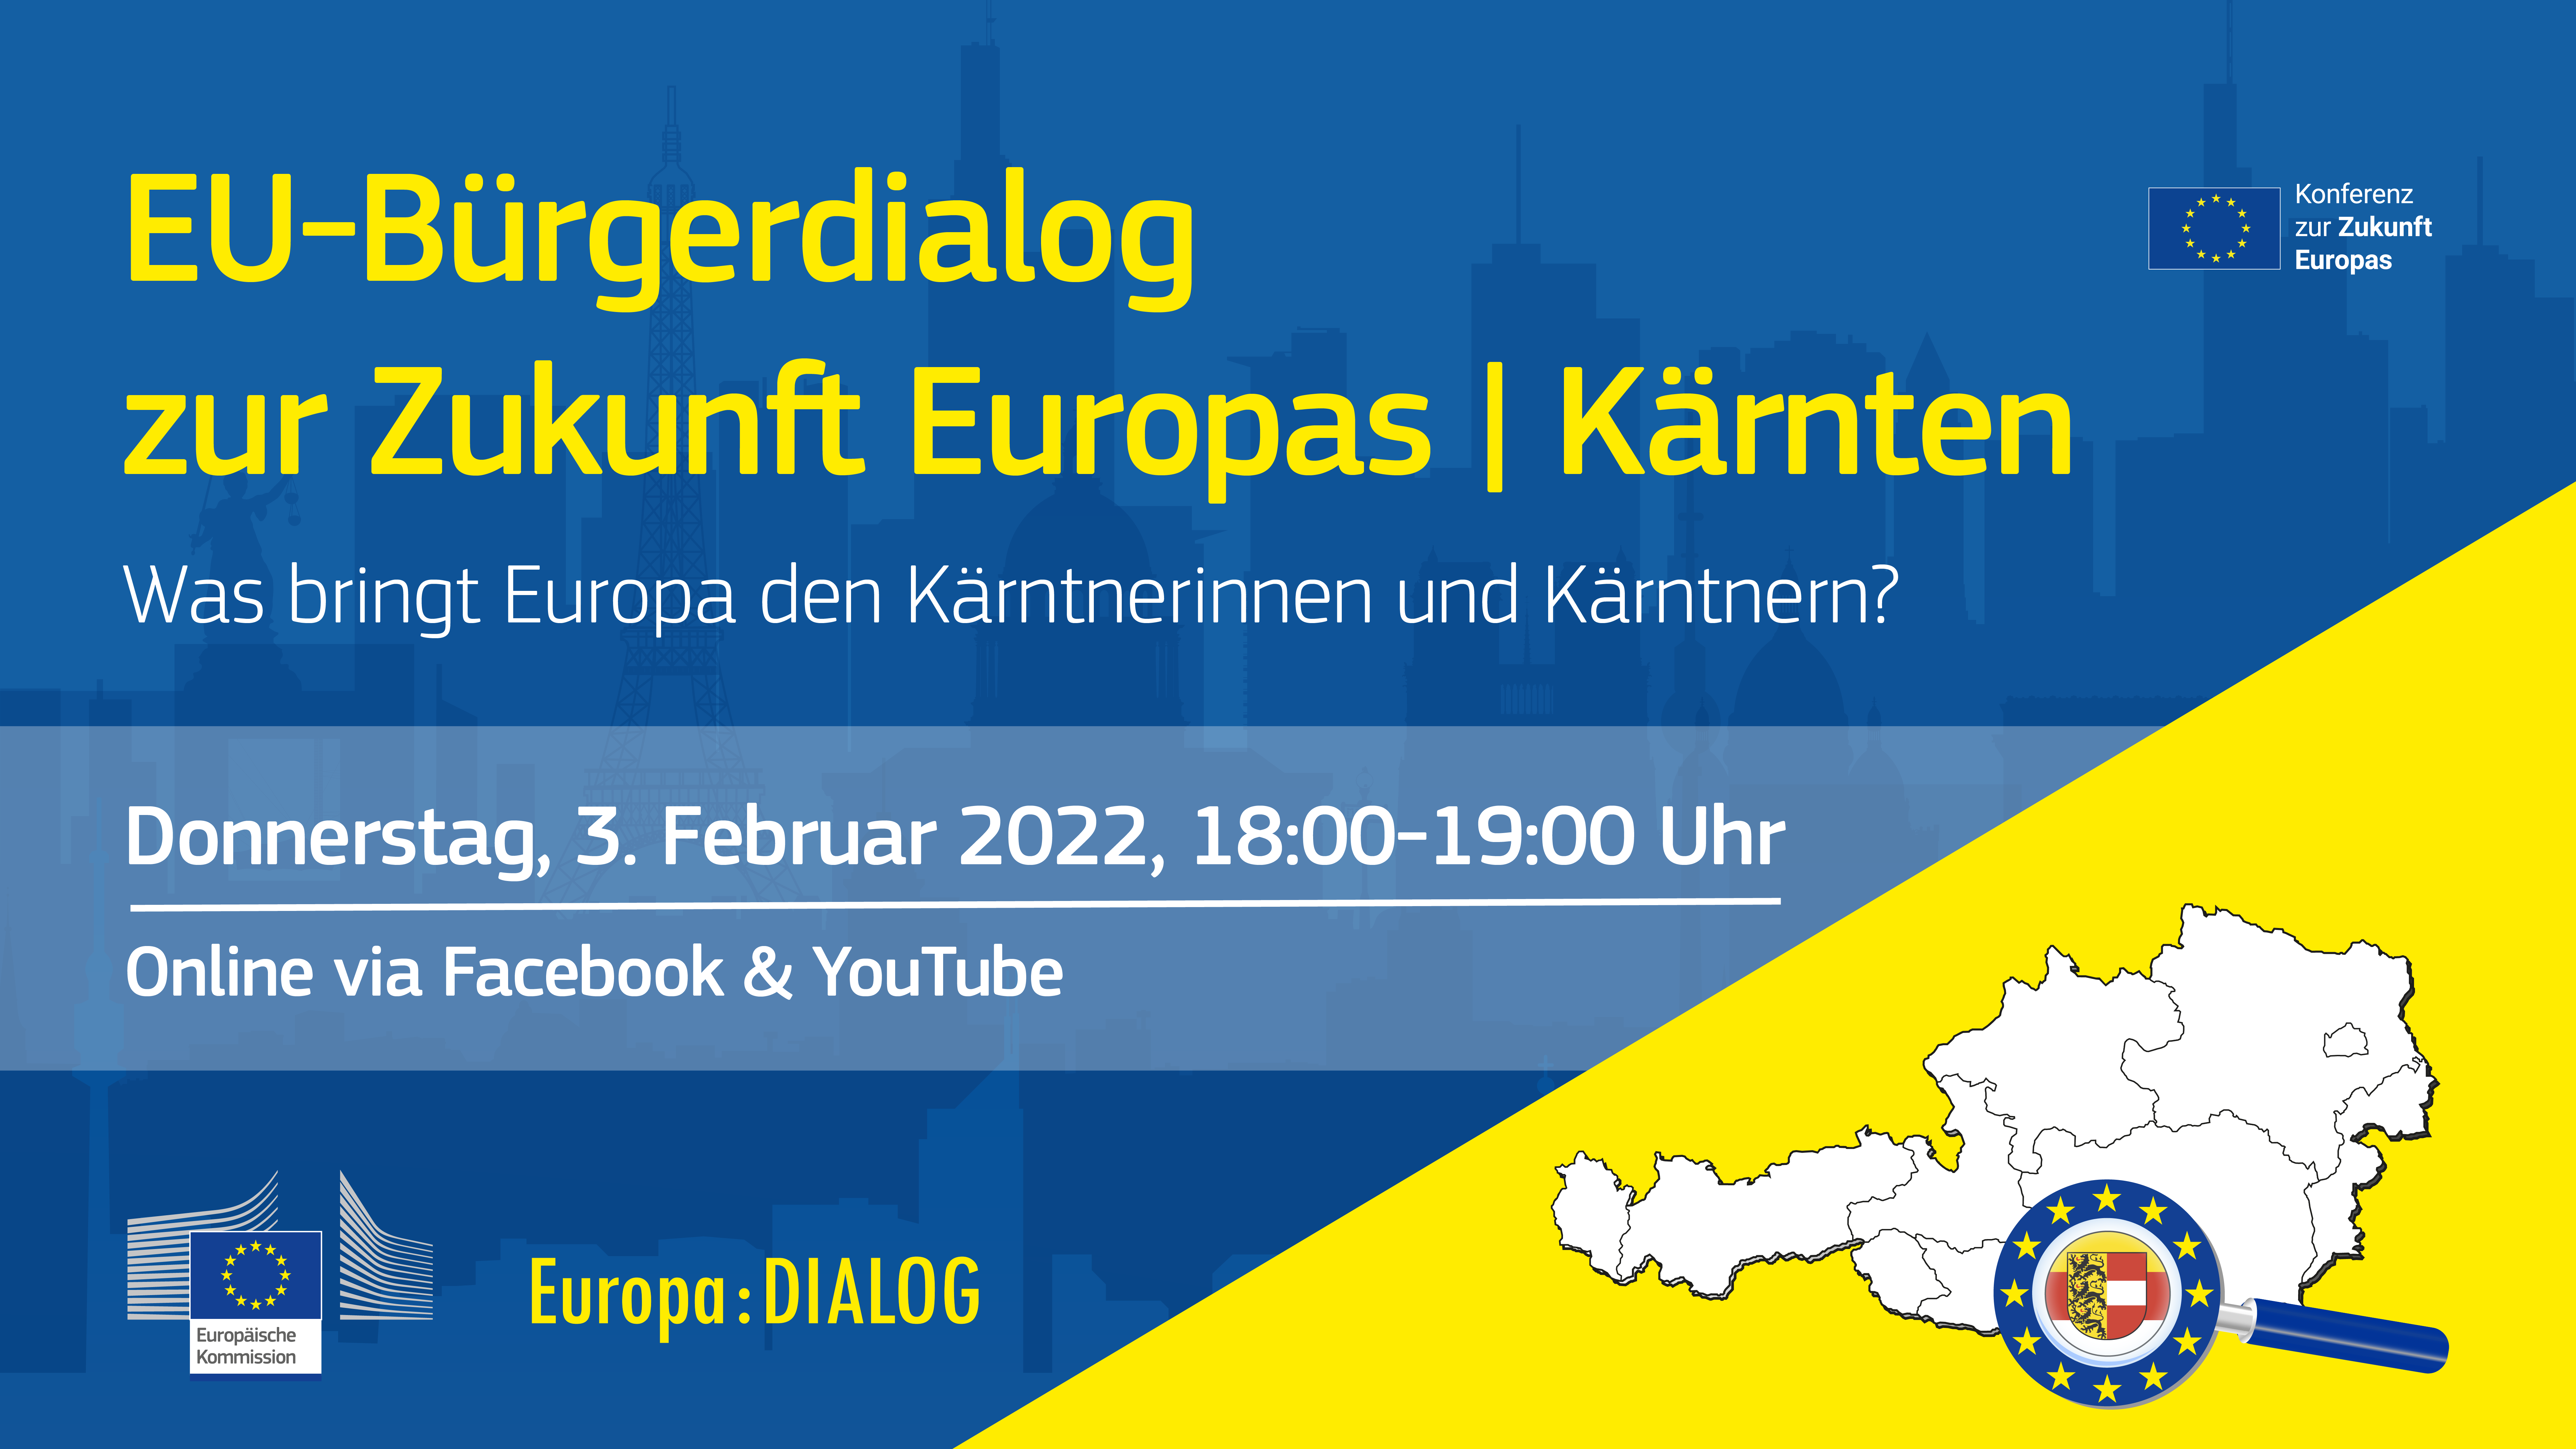 Europa : DIALOG | EU-Bürgerdialog zur Zukunft Europas | Kärnten